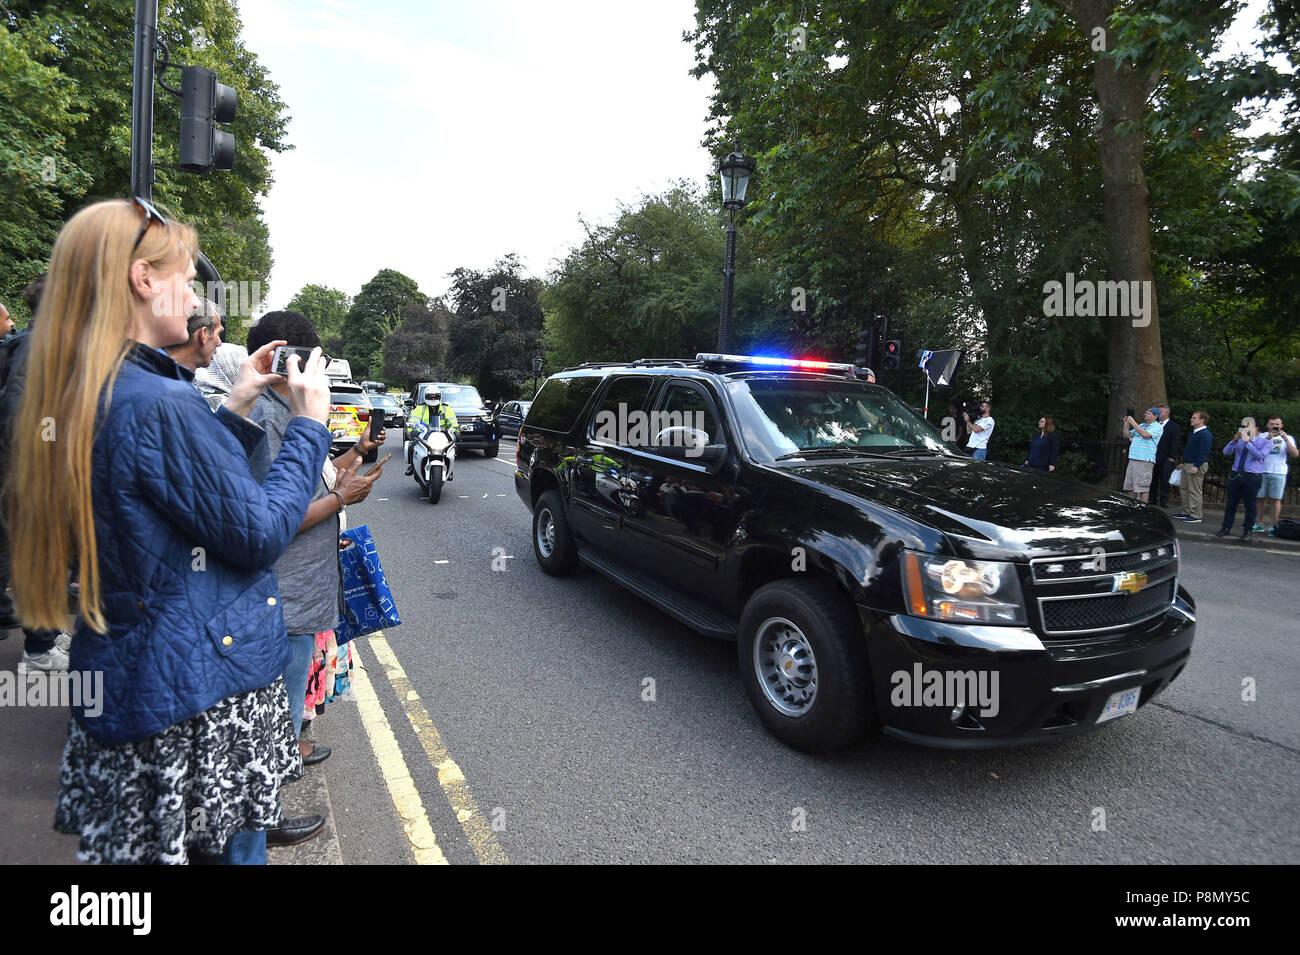 Un véhicule plaqué avec une escorte de police arrive à la résidence de l'ambassadeur US à Regent's Park, Londres, dans le cadre de la visite du président américain Donald Trump au Royaume-Uni. Banque D'Images